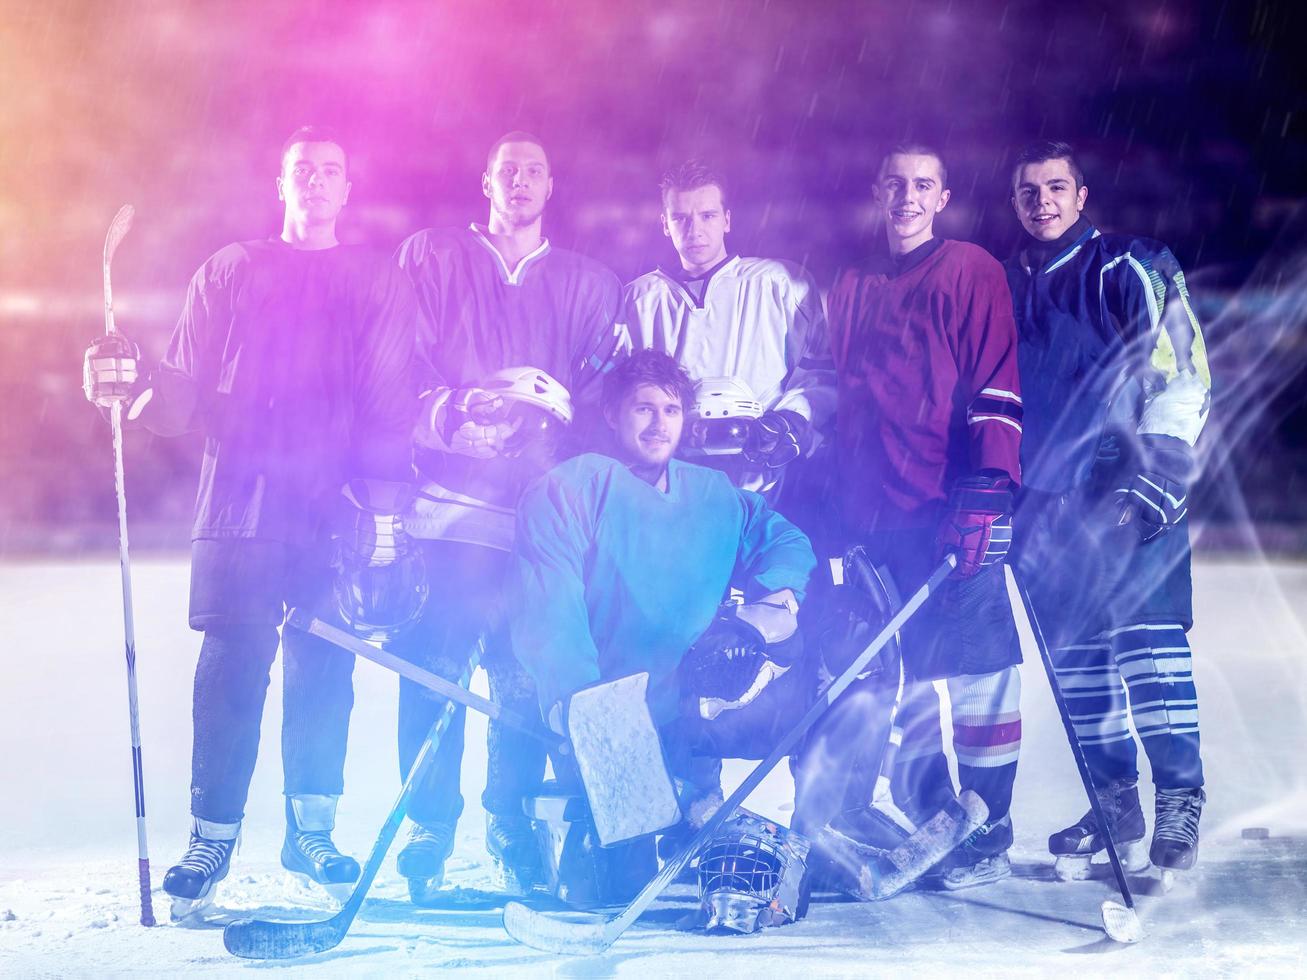 equipo de jugadores de hockey sobre hielo foto